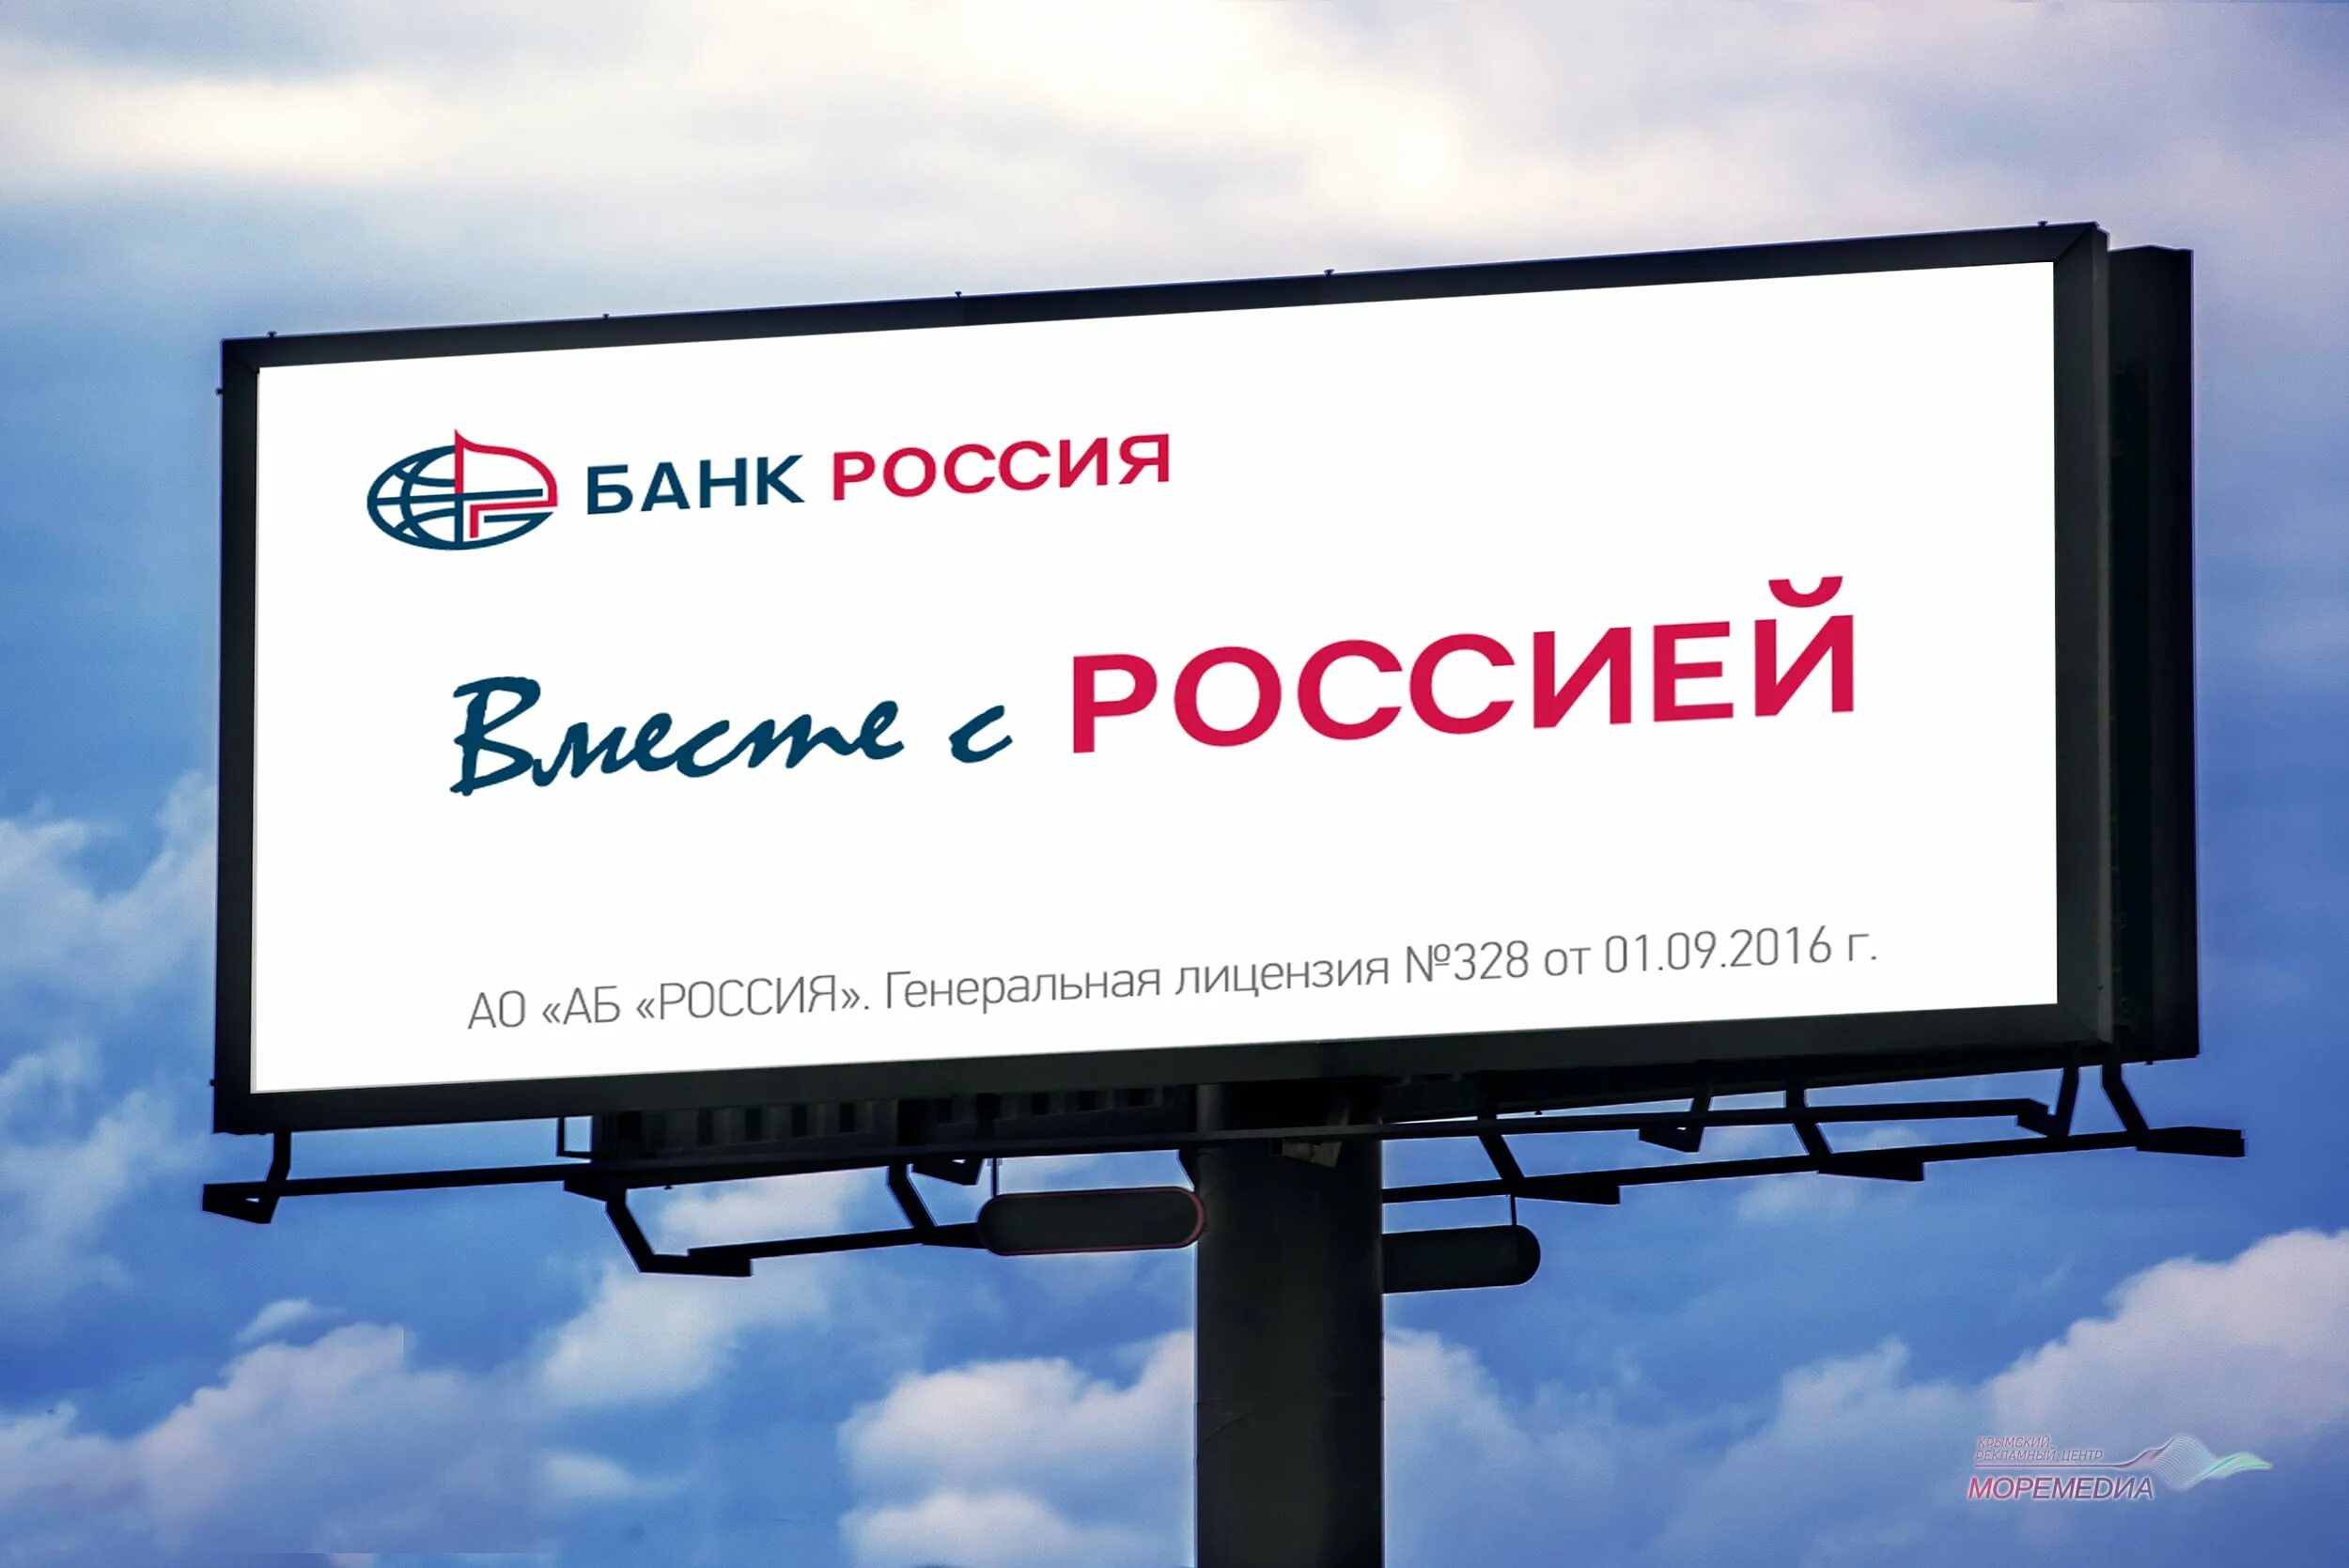 Банк Россия реклама. Рекламные баннеры банков. Реклама банка России. Слоган банка Россия.